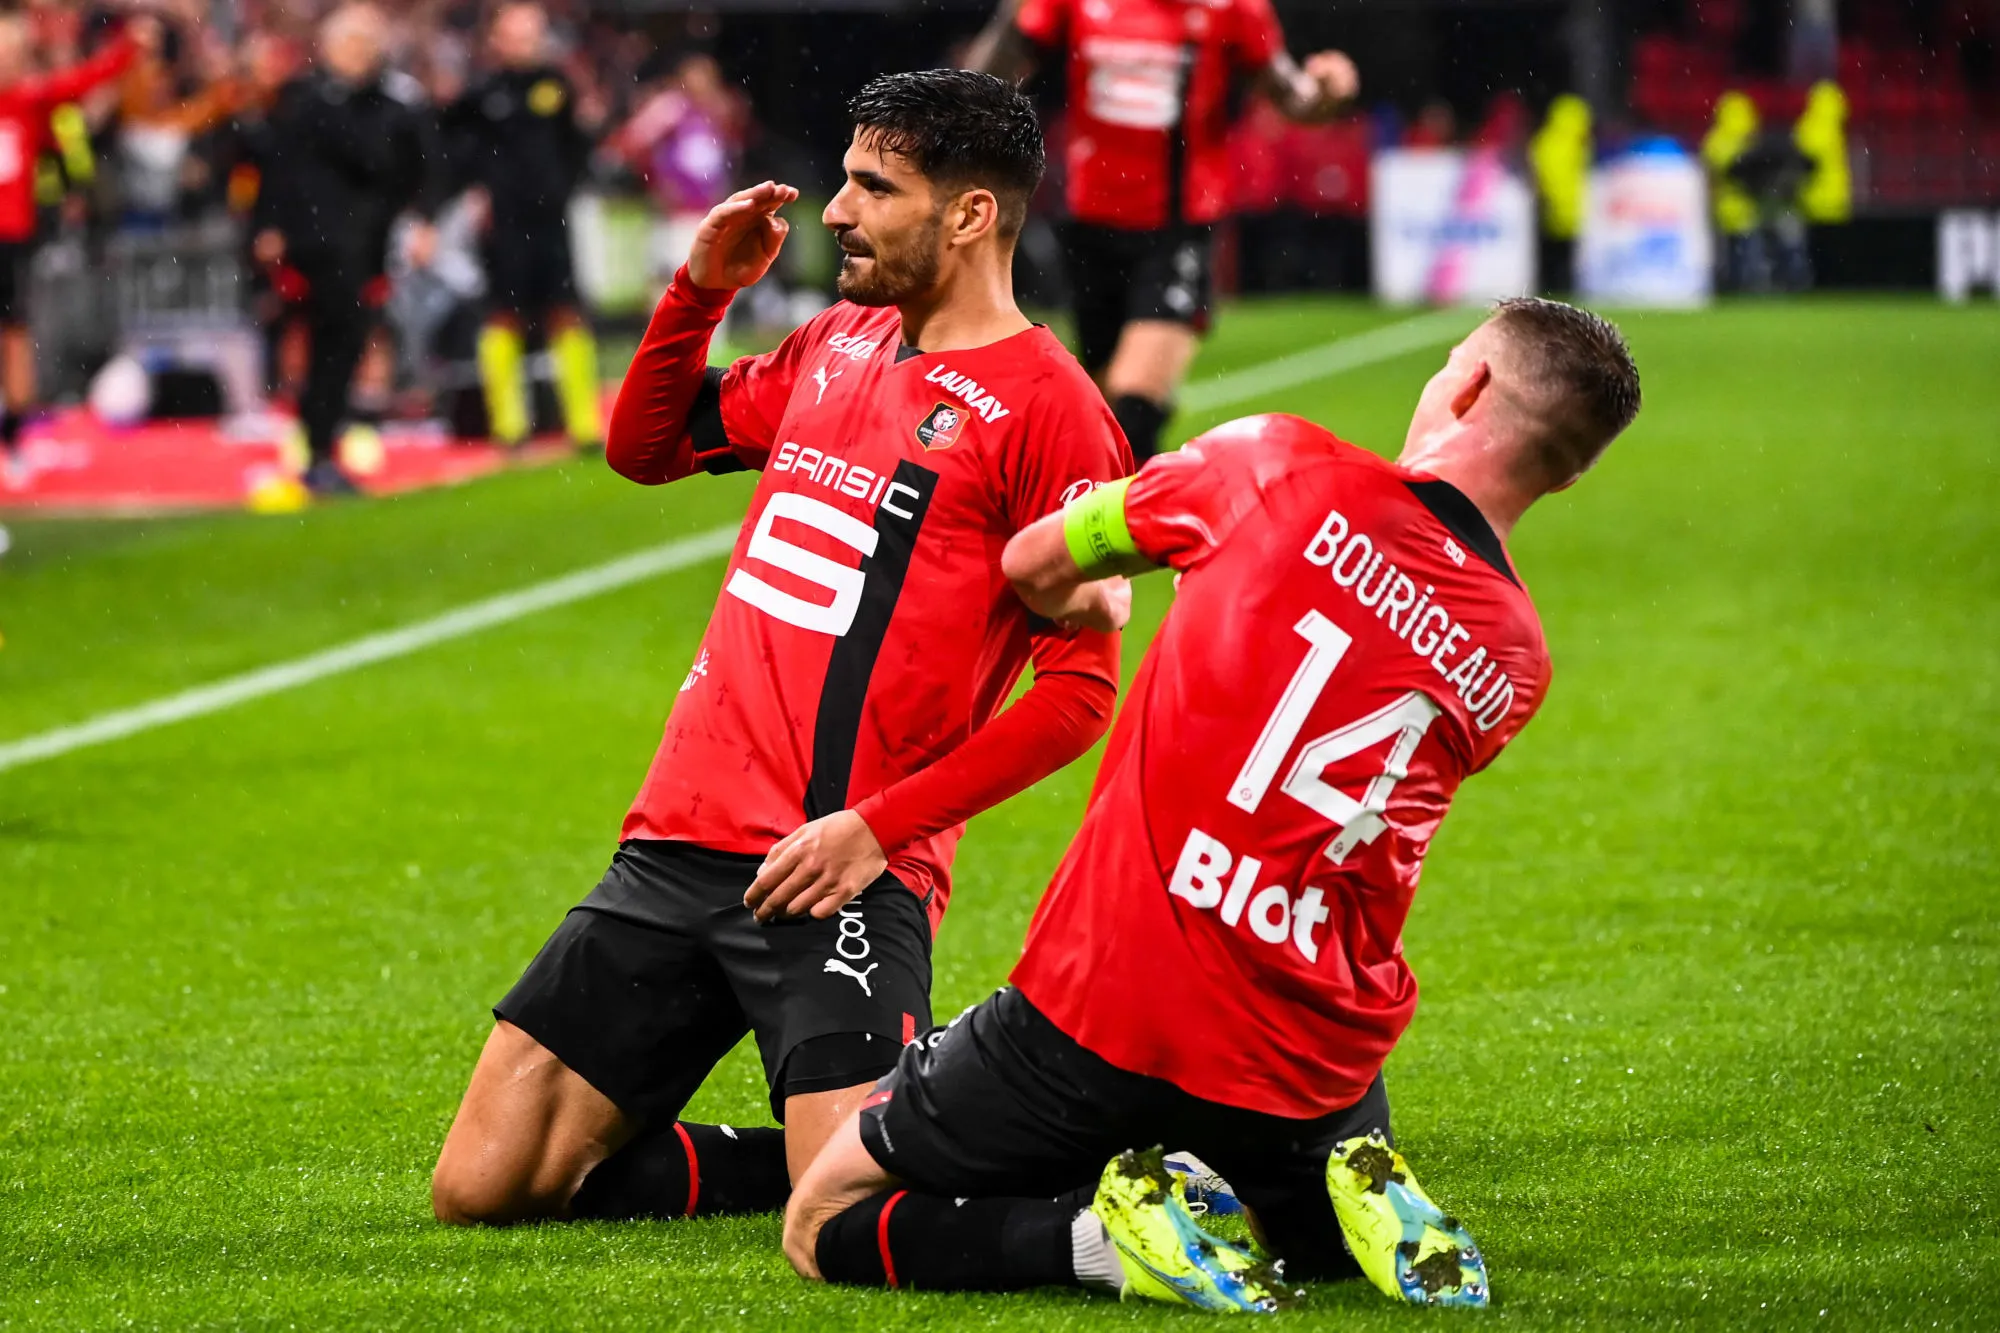 Pronostic Fenerbahce Rennes : analyse, cotes et prono du match de Ligue Europa